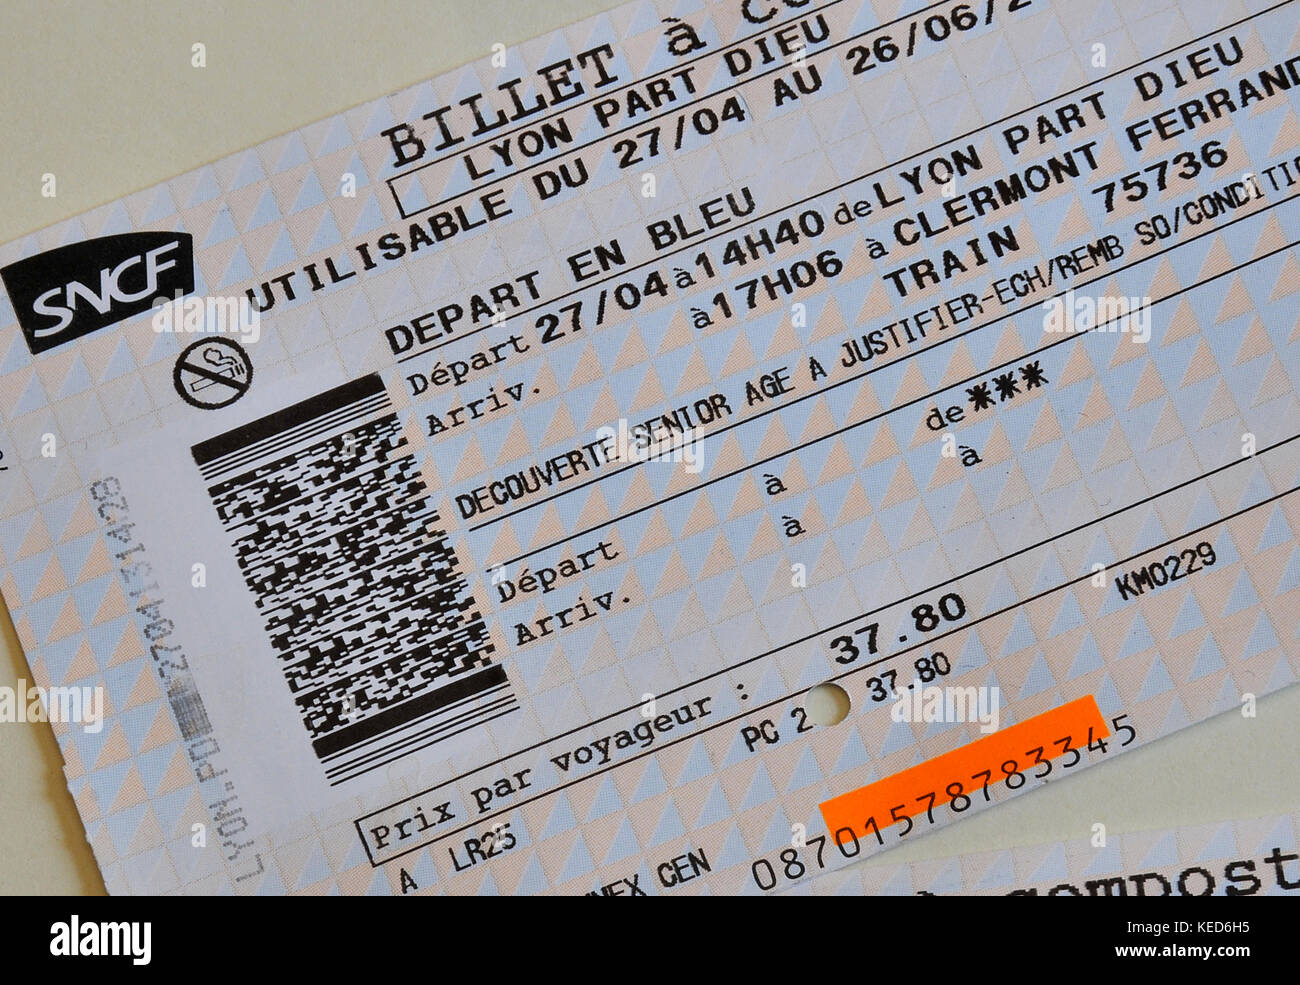 Sncf train ticket Banque de photographies et d'images à haute résolution -  Alamy